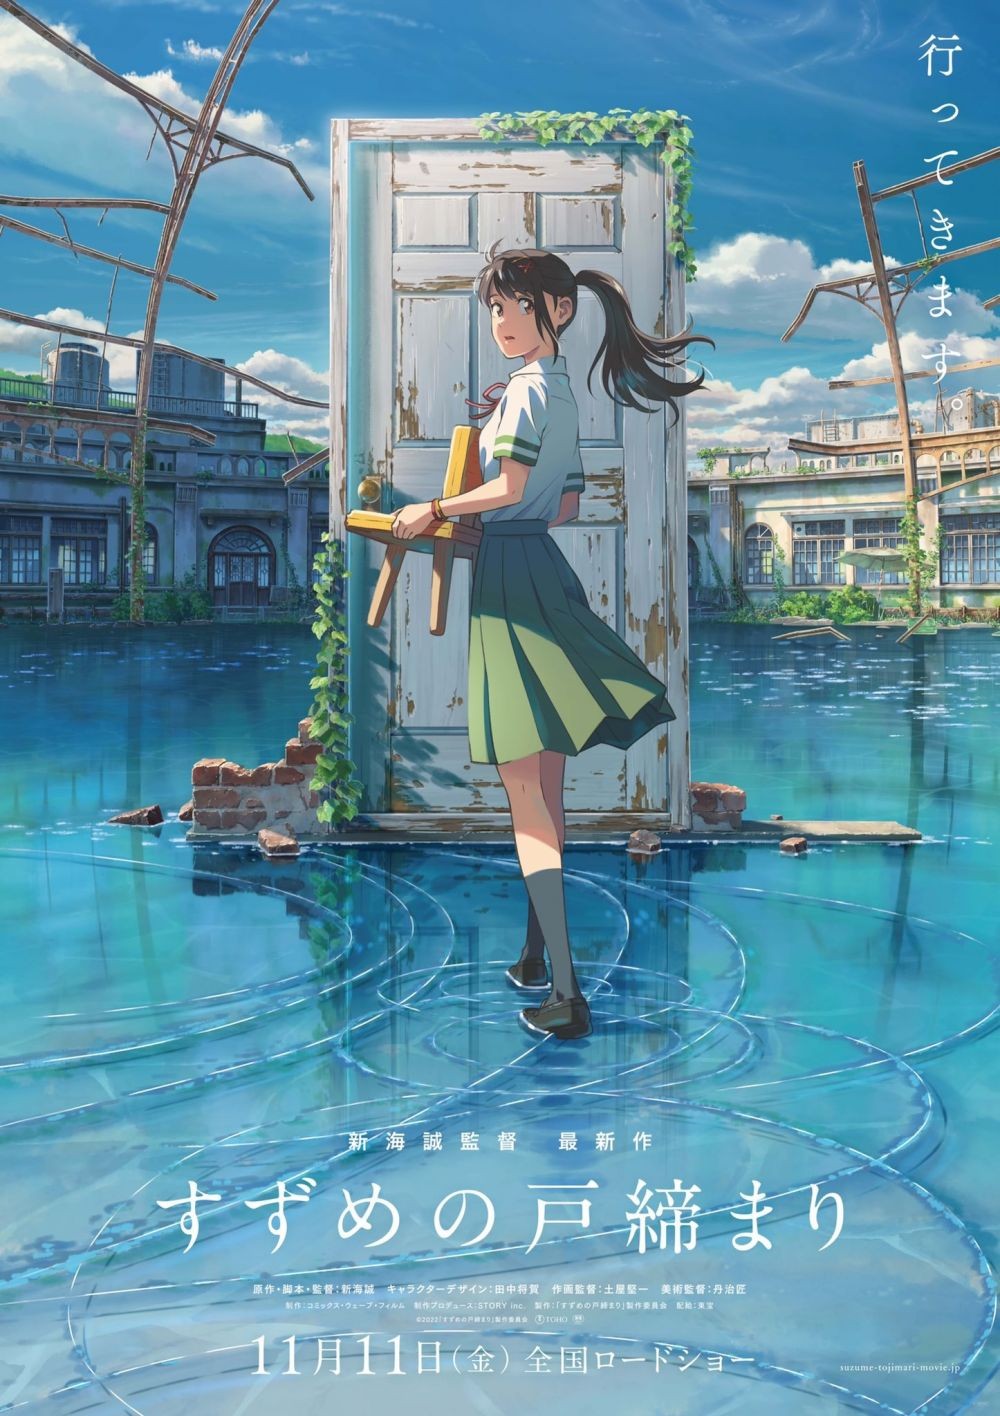 Trailer Movie Suzume no Tojimari dari Makoto Shinkai Telah Dirilis!